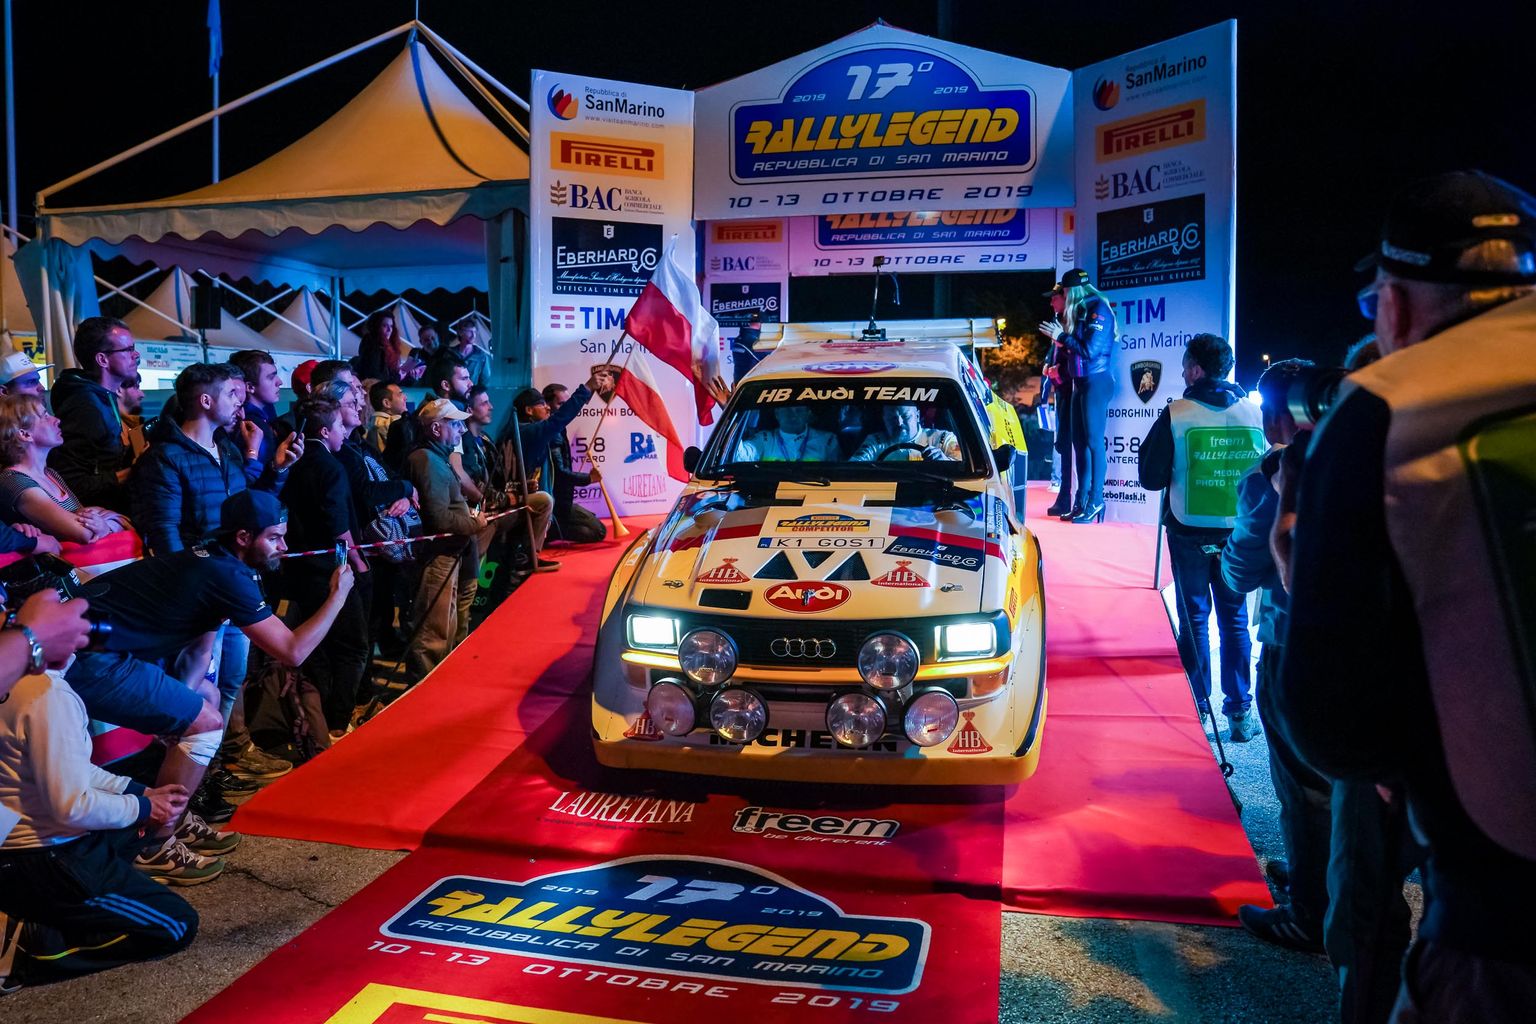 Rally Legend 2019 sacensības Sanmarīno